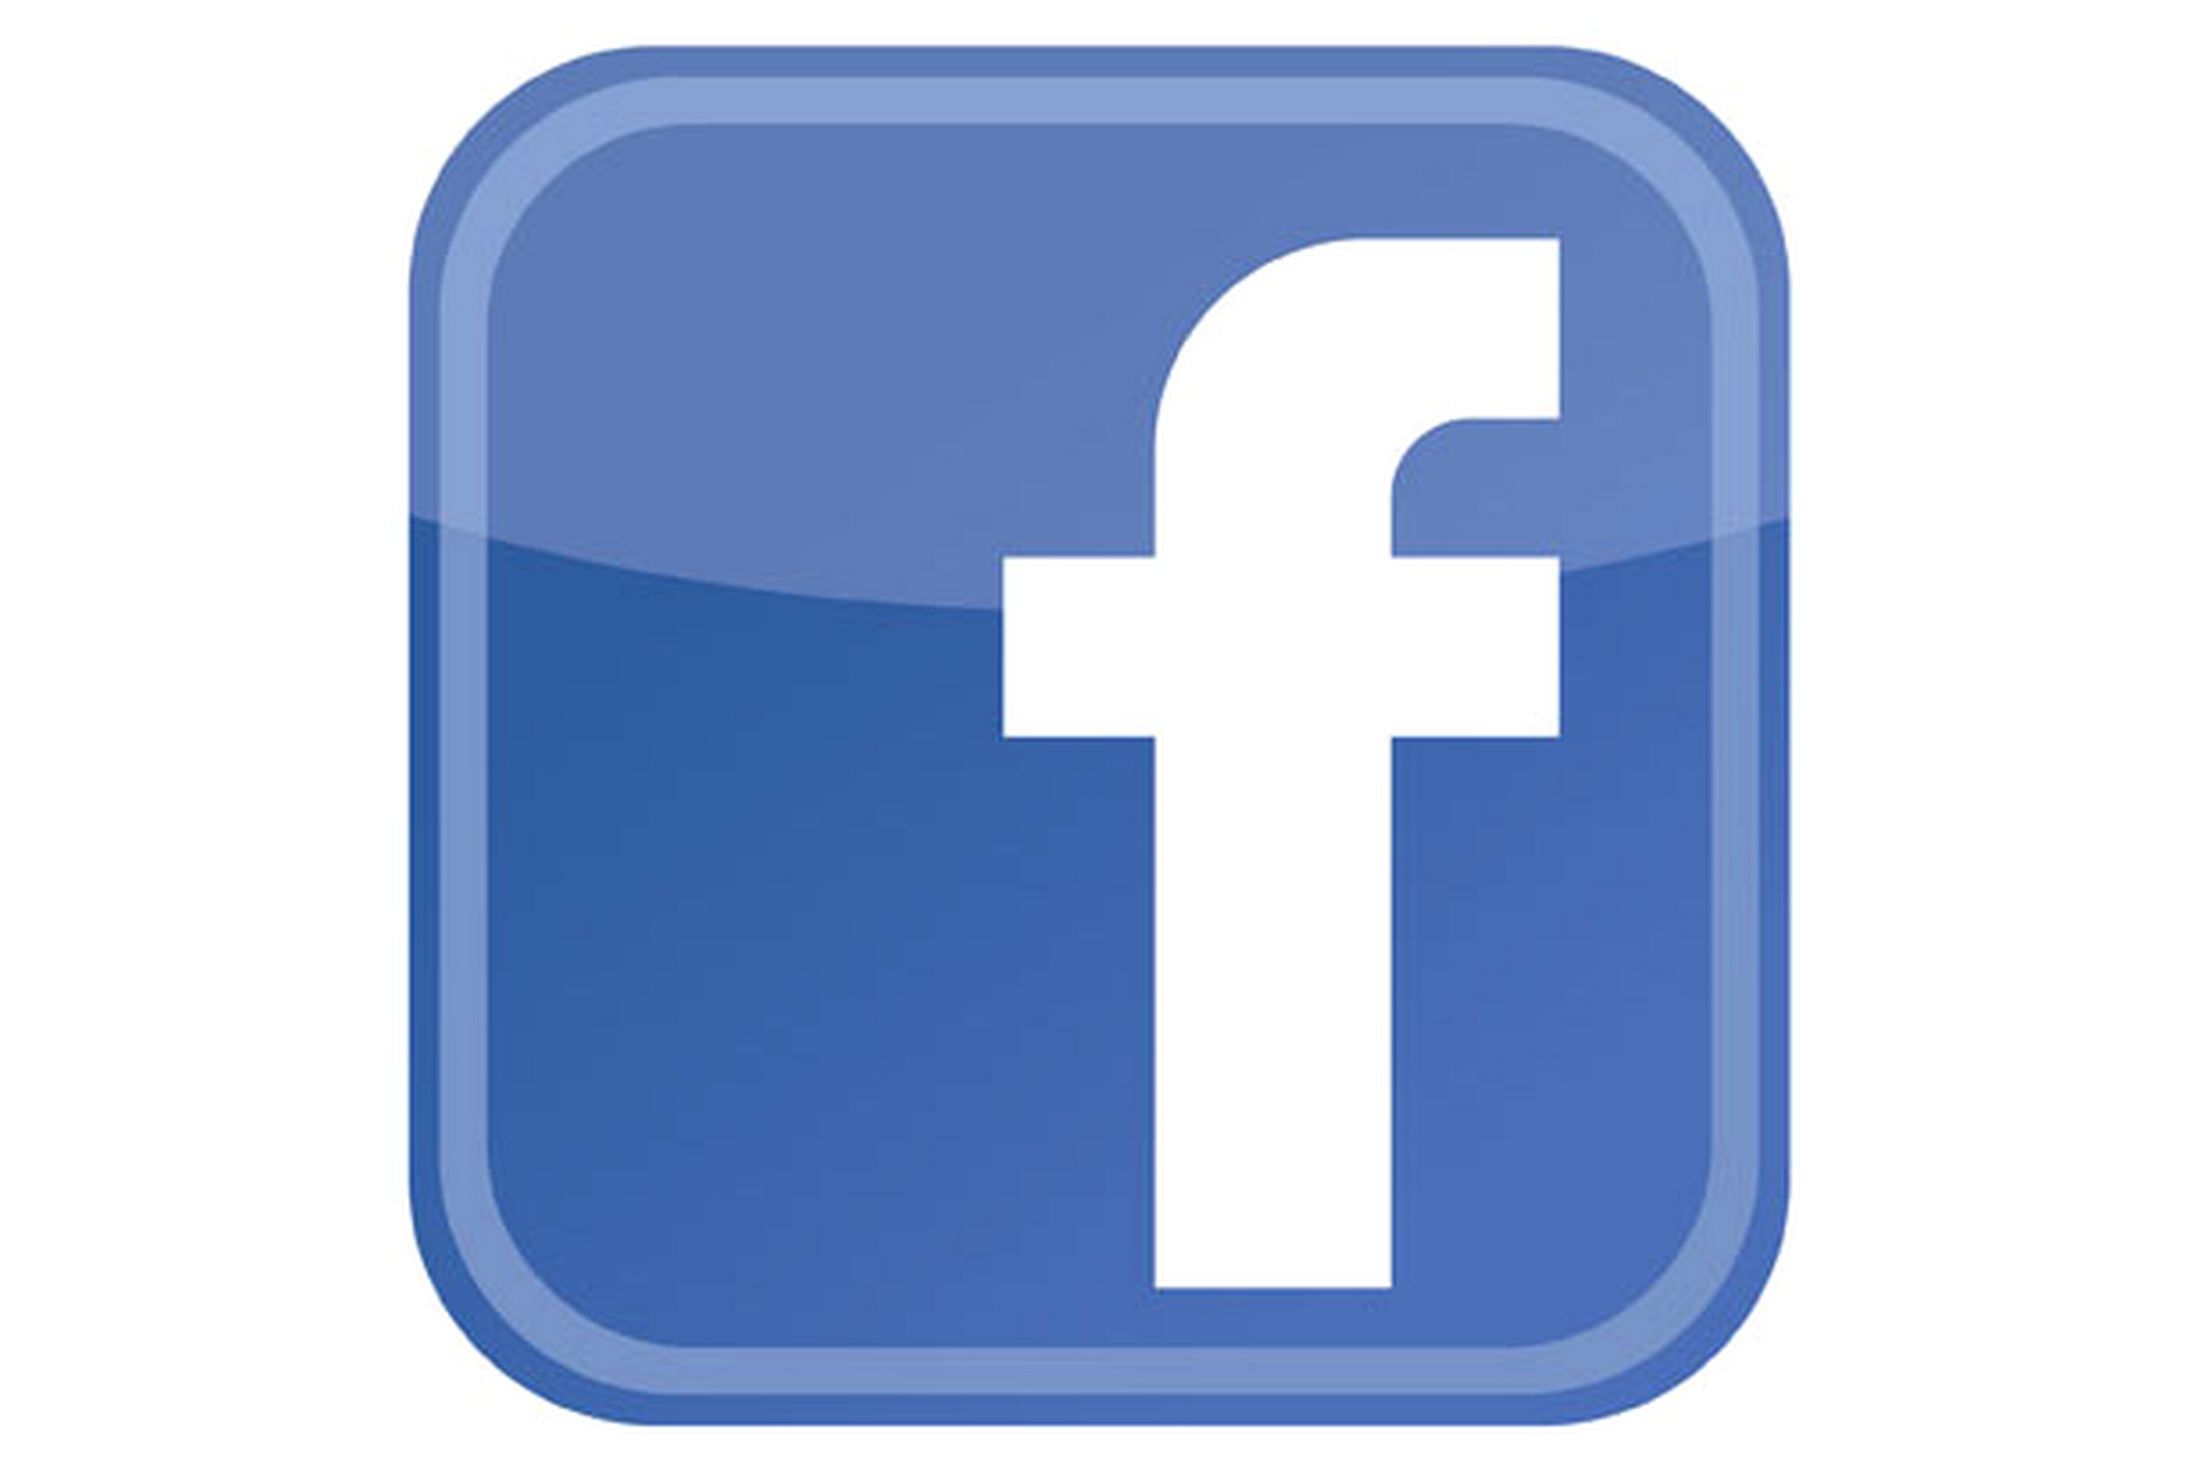 آمار جدید از فیسبوک: 1 میلیارد کاربر موبایل فعال، 200 میلیون حساب اینستگرام